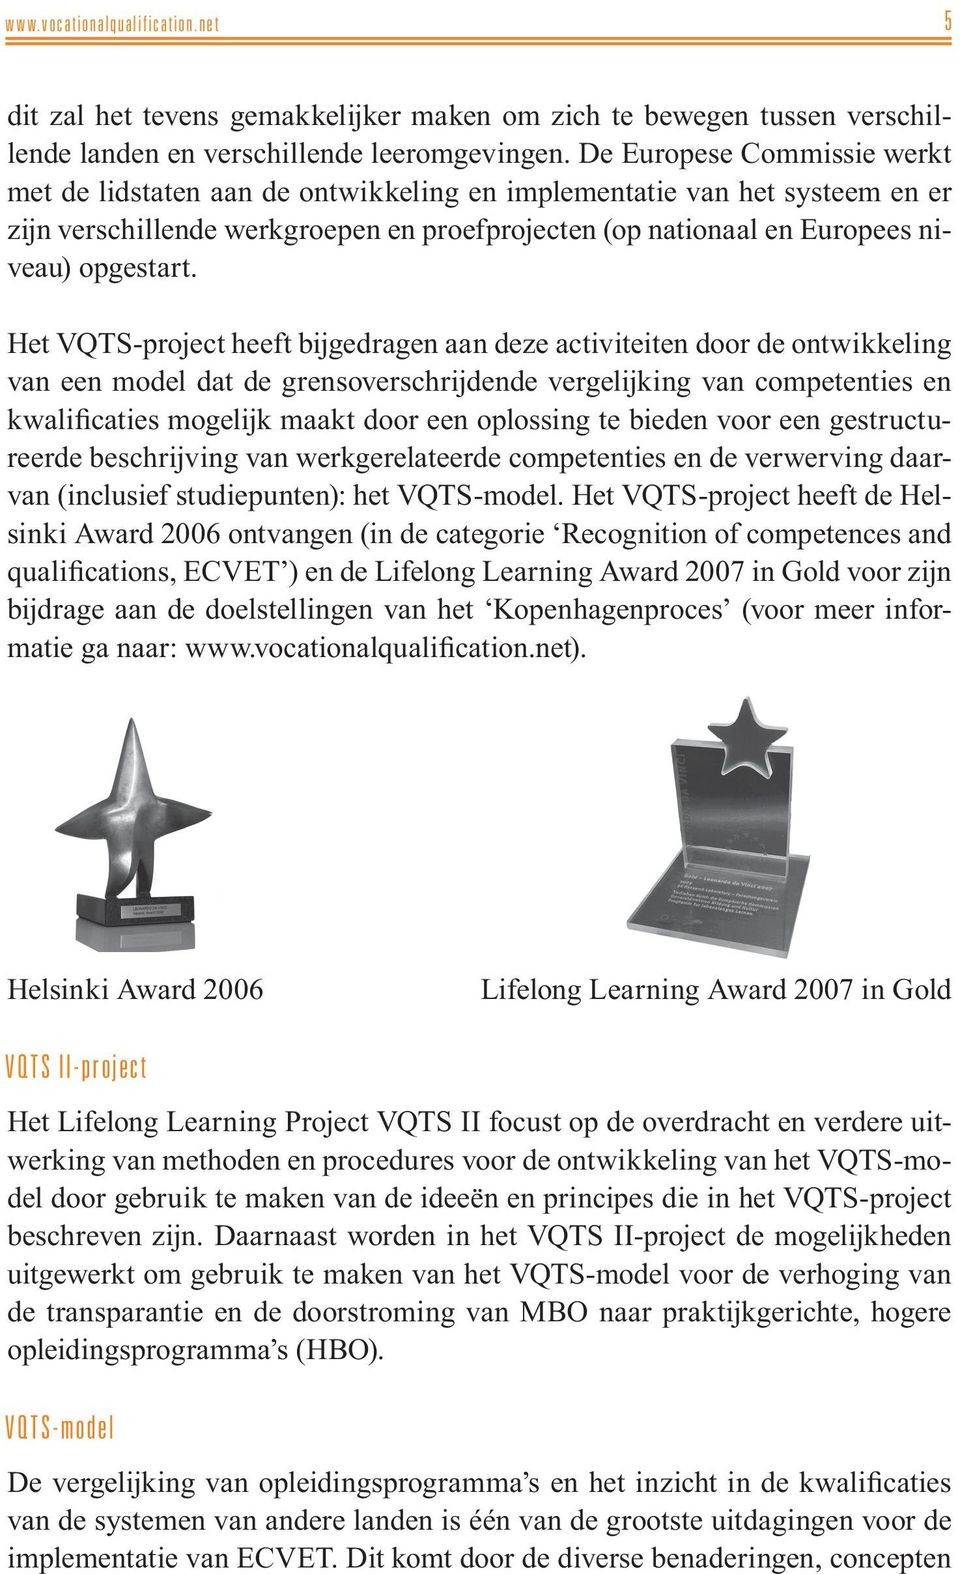 Het VQTS-project heeft bijgedragen aan deze activiteiten door de ontwikkeling van een model dat de grensoverschrijdende vergelijking van competenties en kwalificaties mogelijk maakt door een